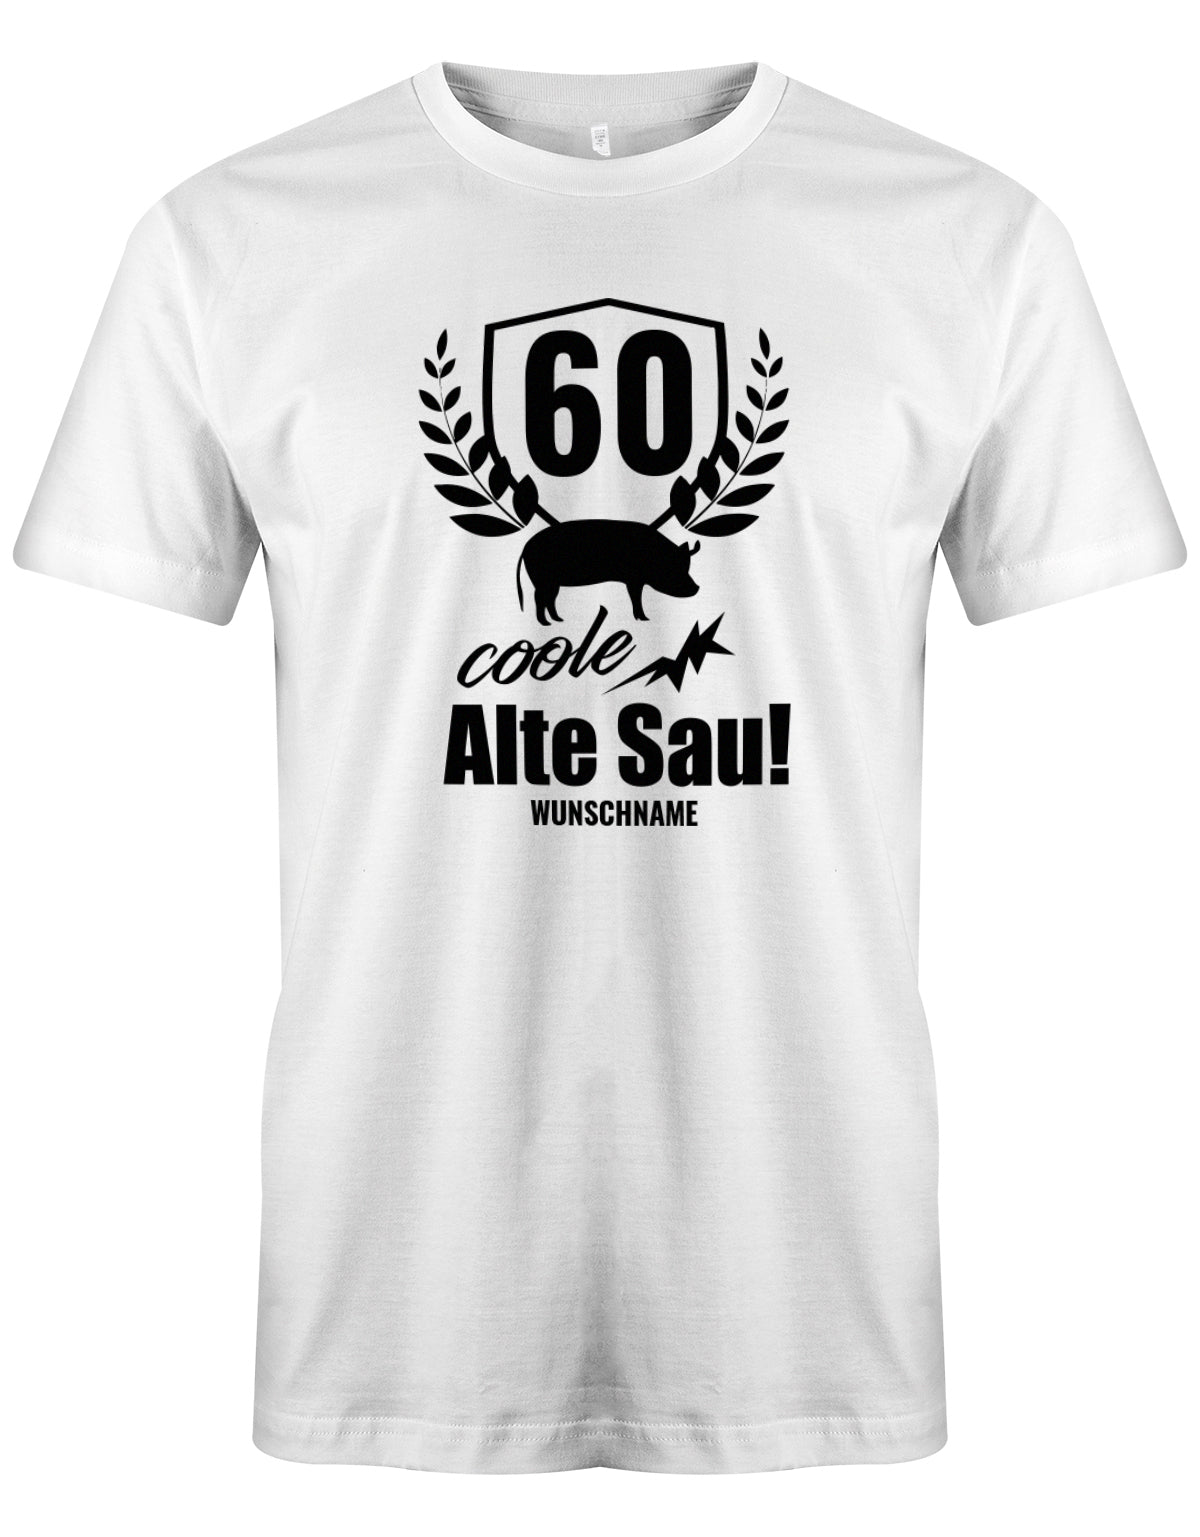 Lustiges T-Shirt zum 60. Geburtstag für den Mann Bedruckt mit 60 coole Alte Sau! mit Wunschname. Weiss